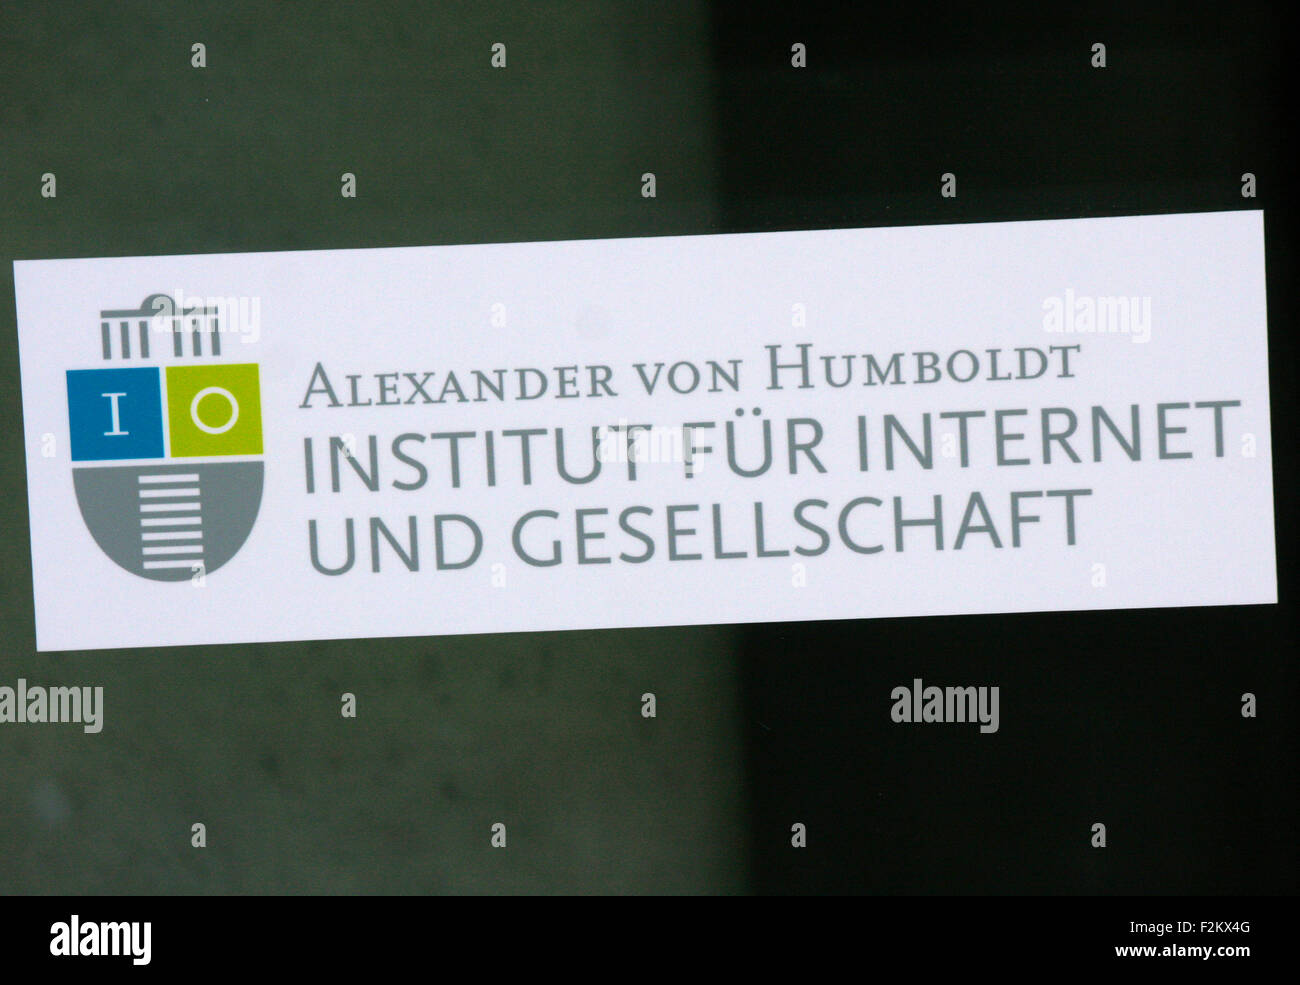 Markenname: 'Alexander von Humboldt Institut fuer Internet und Gesellschaft', Berlin. Stock Photo